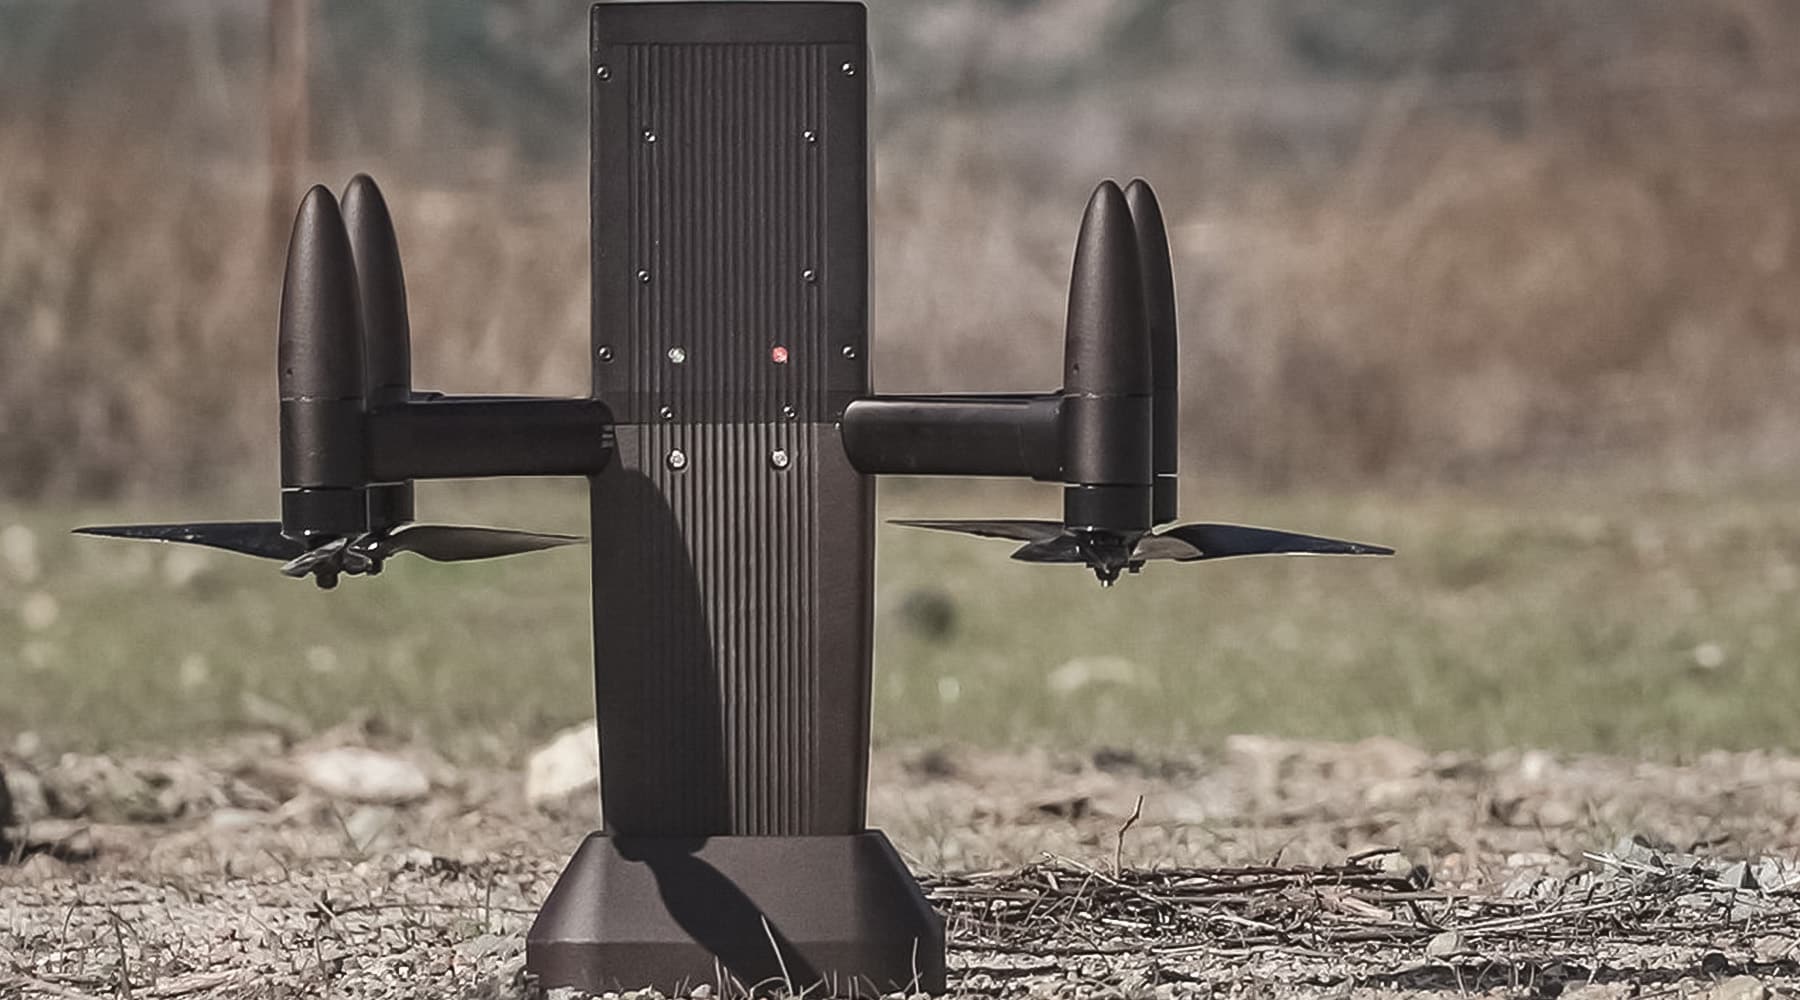 Military field recon drone